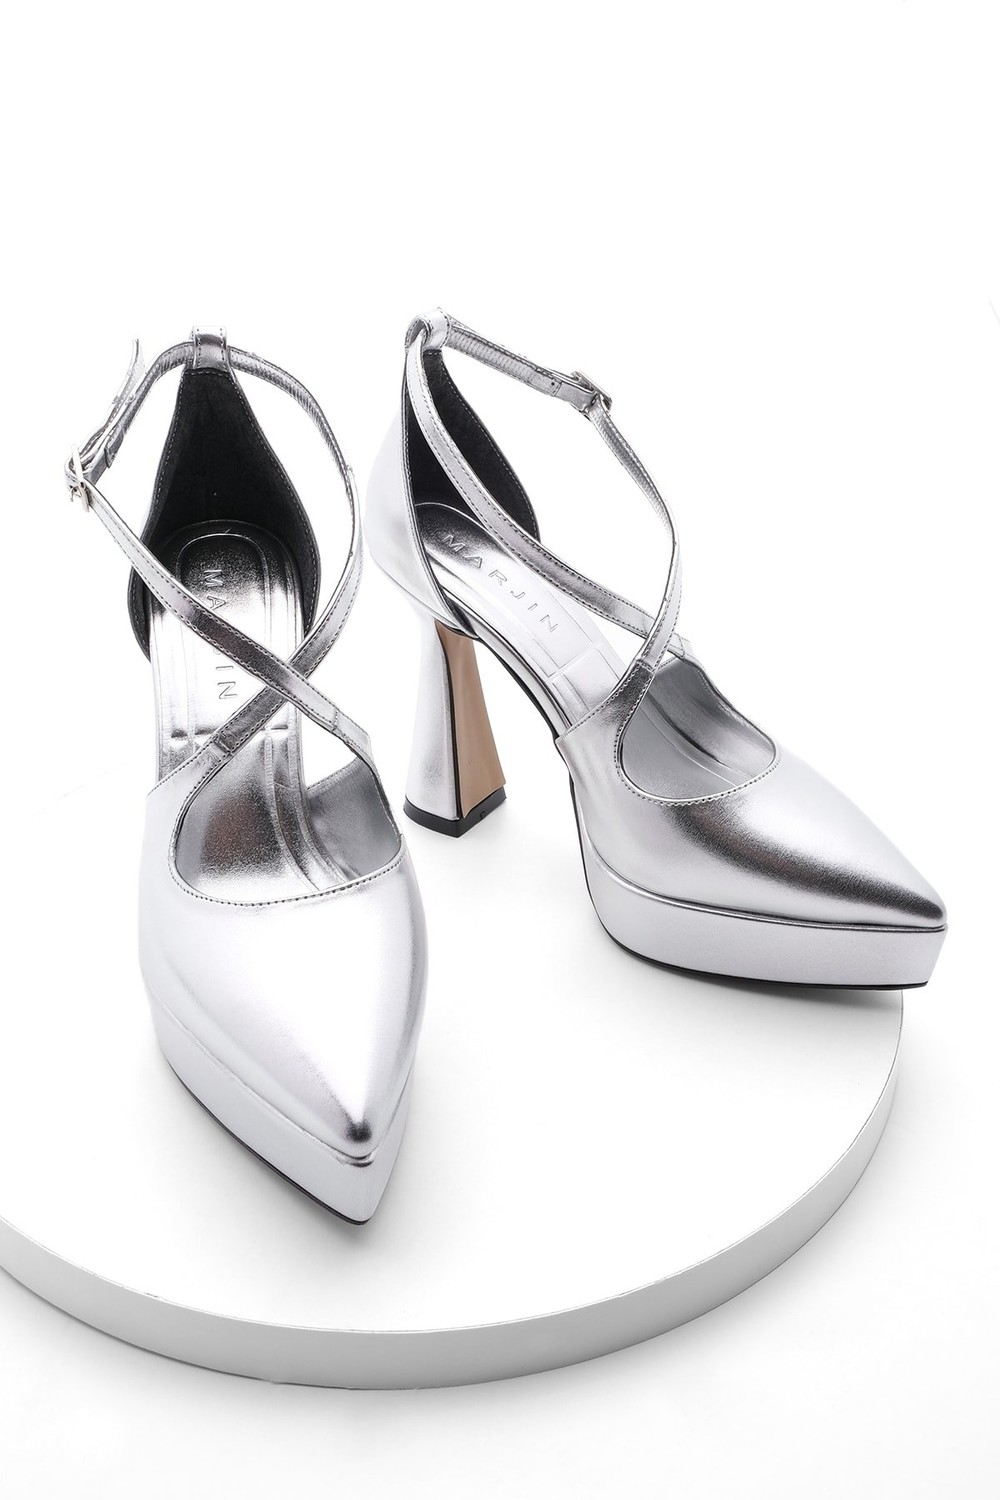 Marjin Evening Shoes - Silver - Stiletto Heels